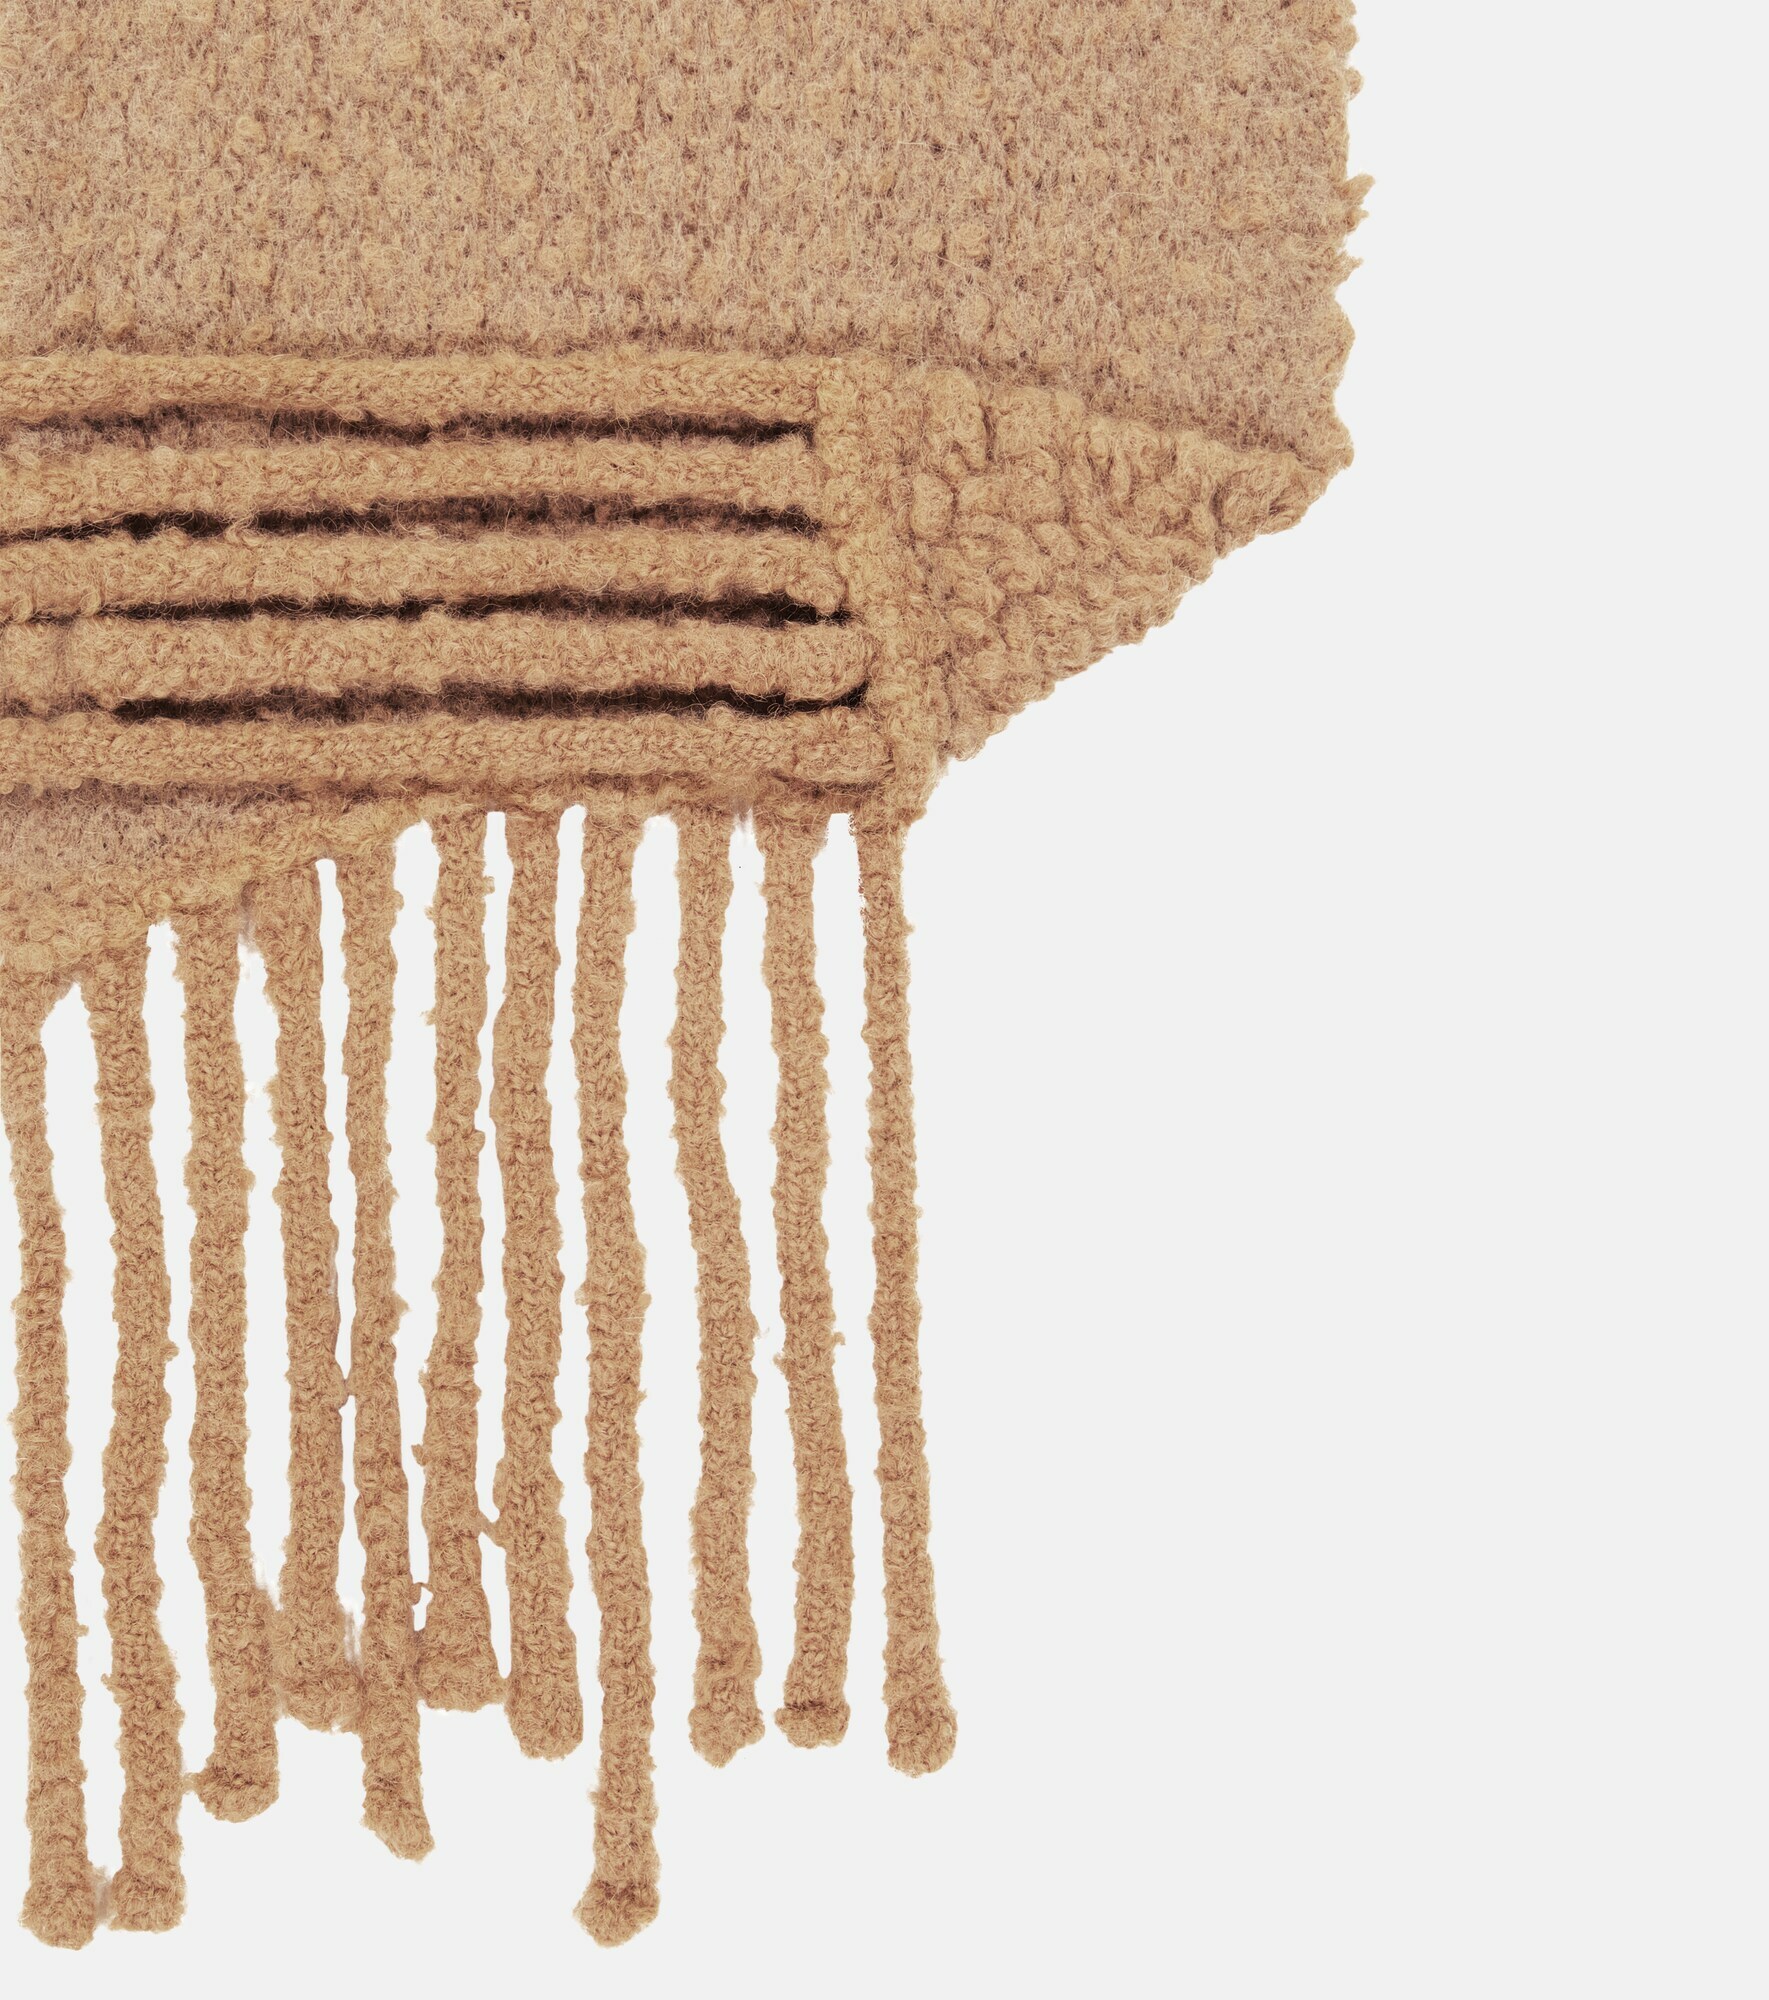 Moncler - Bouclé-knit scarf Moncler